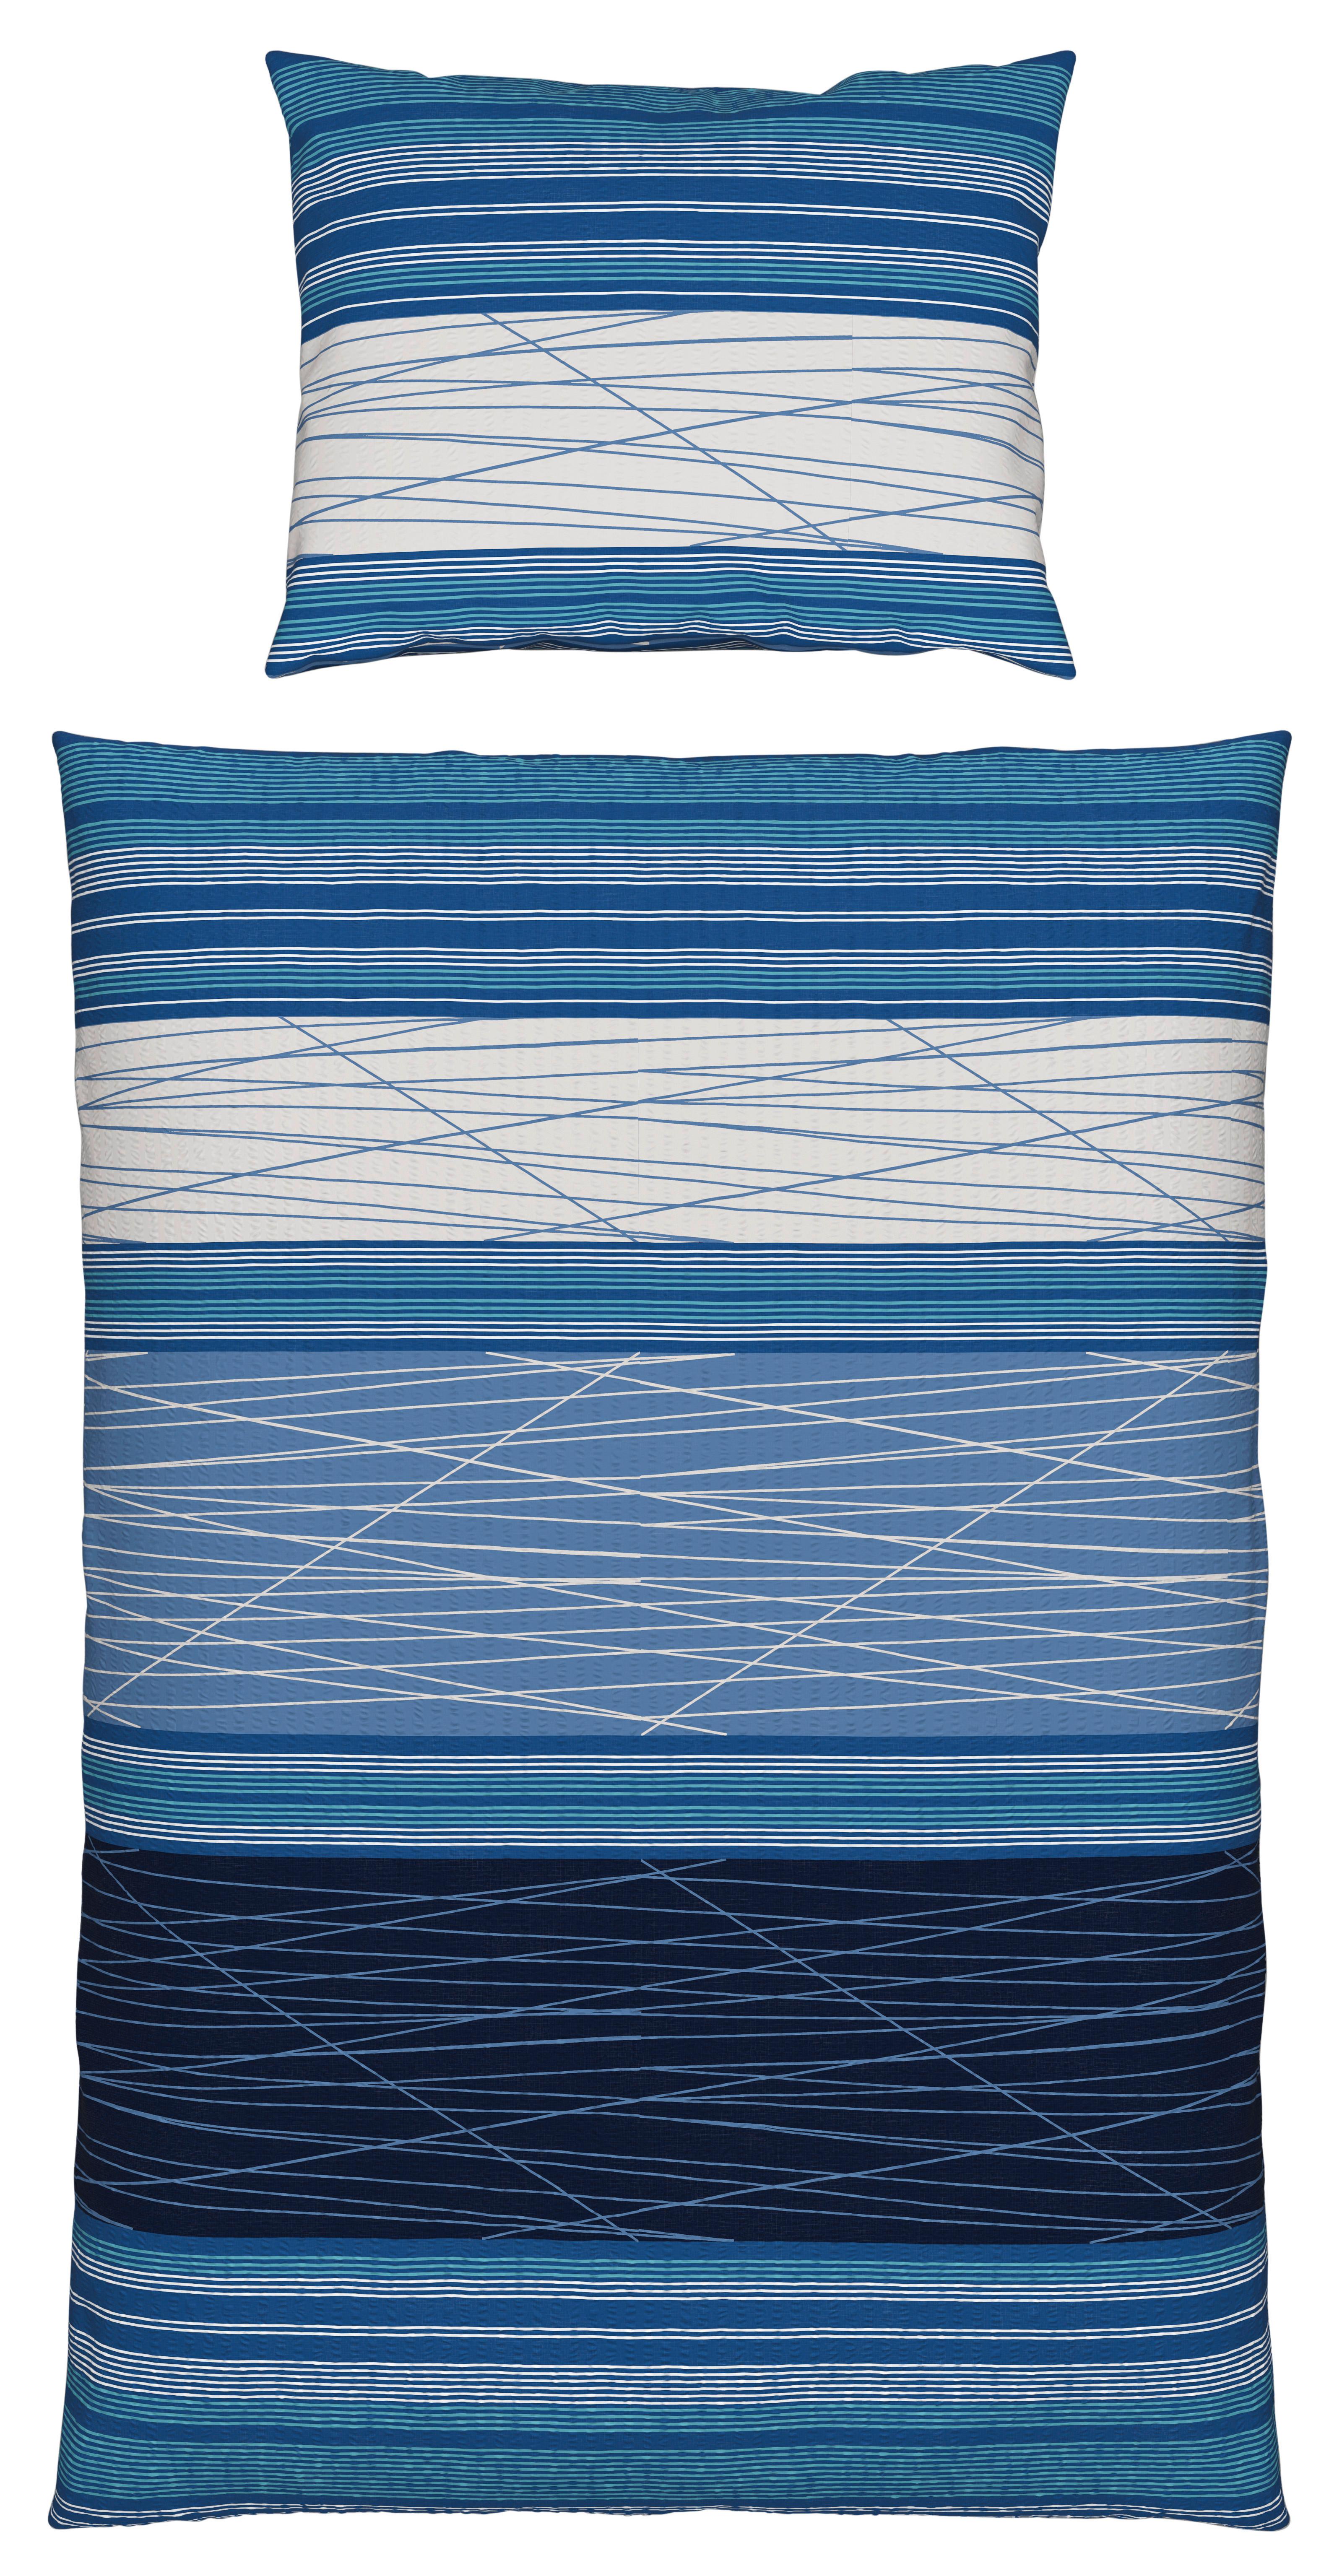 Seersucker Bettwäsche 140x 200 cm Emina Blau Streifen - Blau, MODERN, Textil - Luca Bessoni